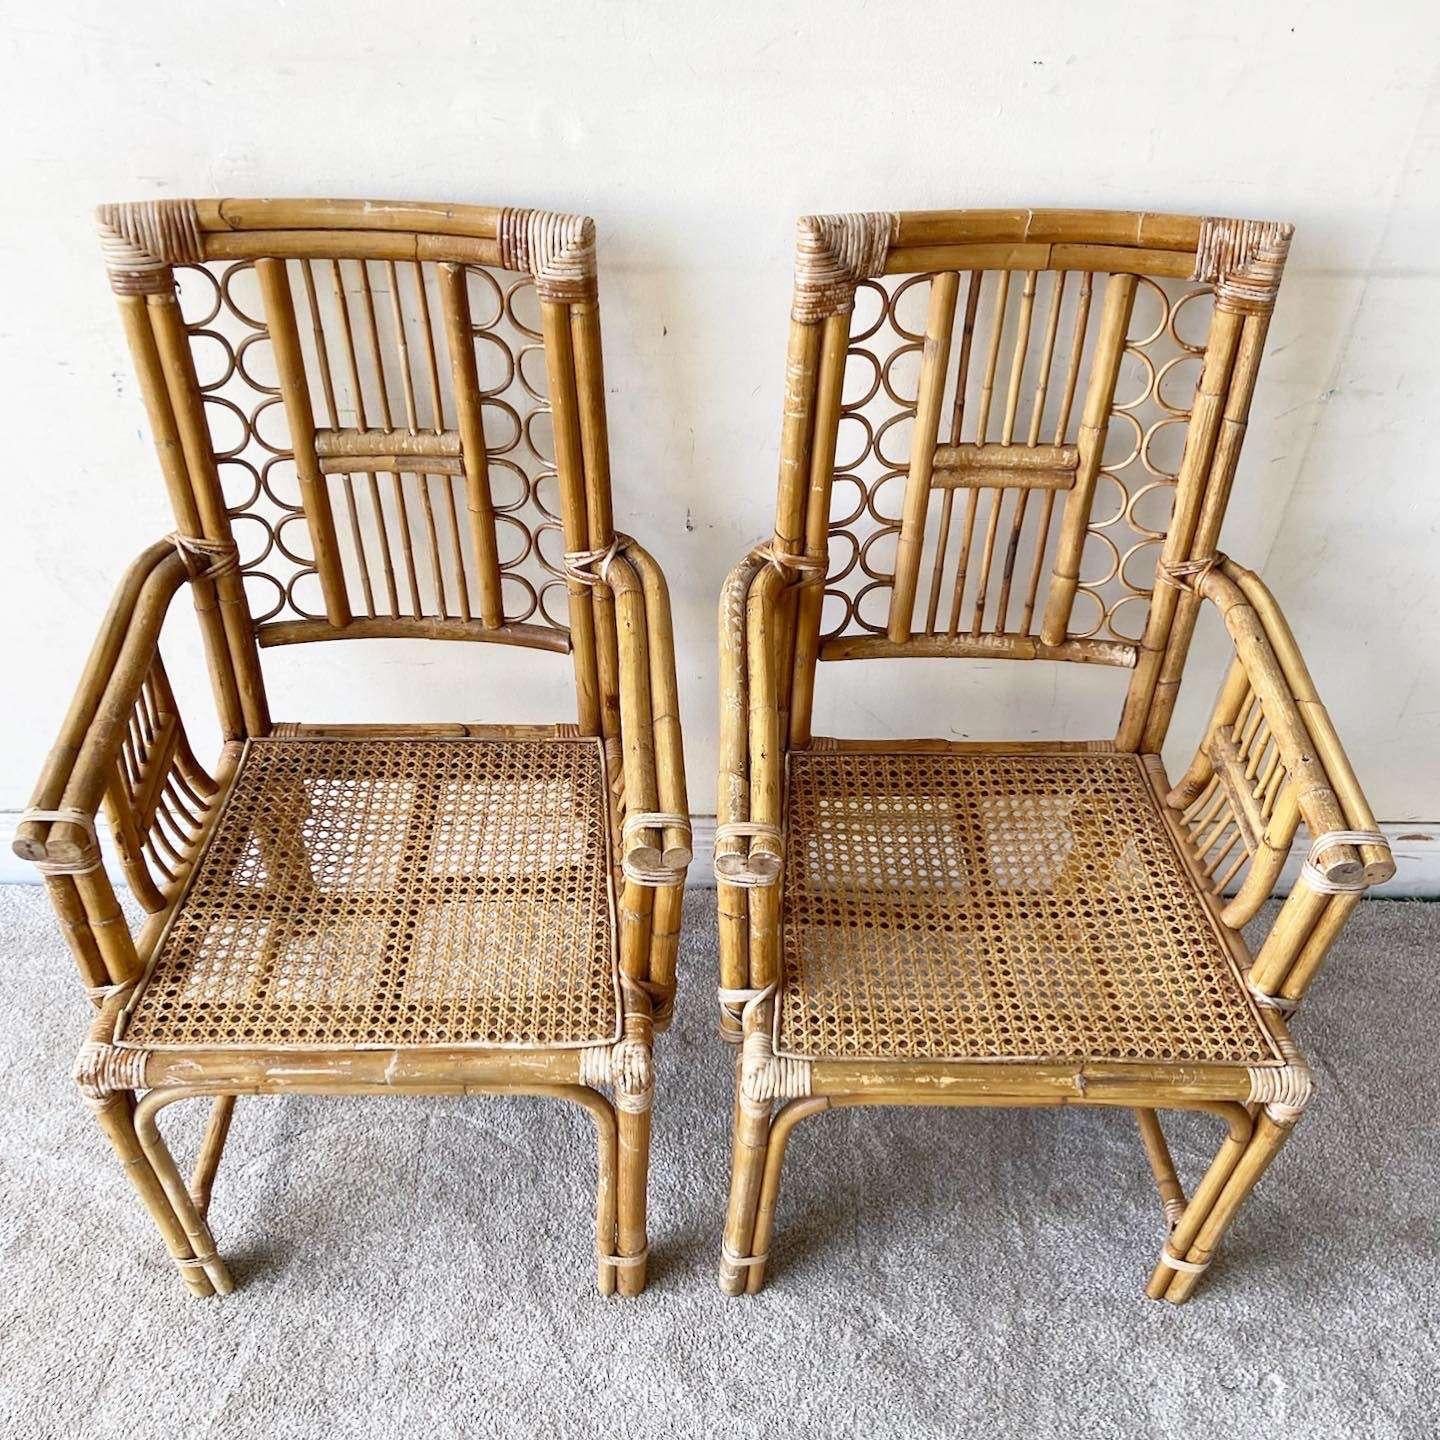 Phänomenal Paar Vintage böhmischen Bambus und Rattan Esszimmerstühle. Sie verfügen über einen Can-Sitz mit einer geflochtenen Rückenlehne.

Sitzhöhe ist 17.0 in